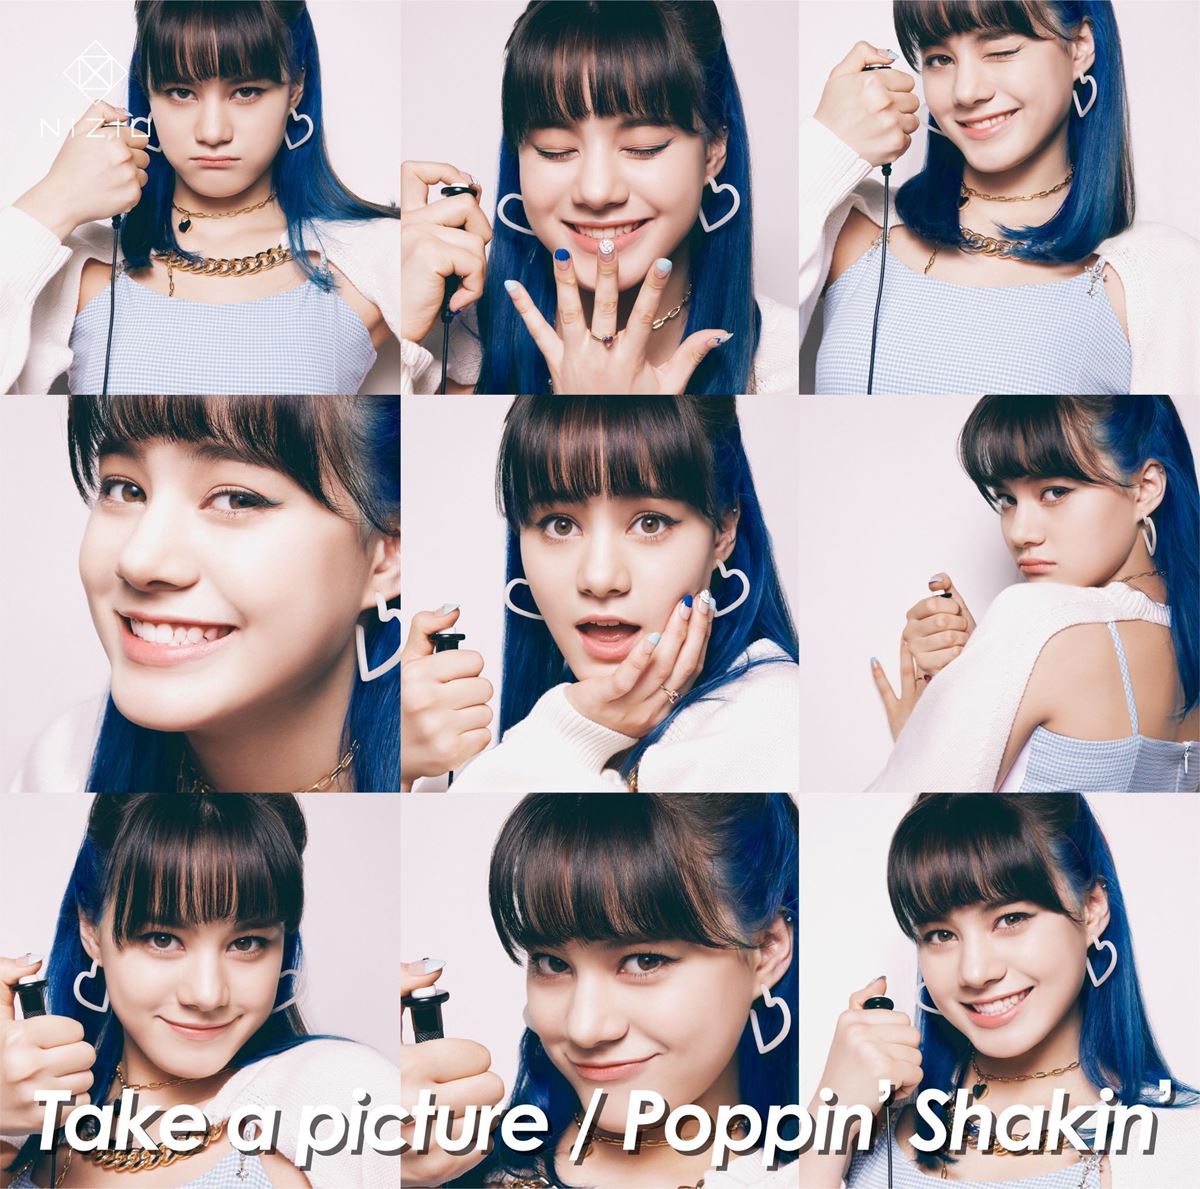 『Take a picture／Poppin’ Shakin’』NINA盤ジャケット